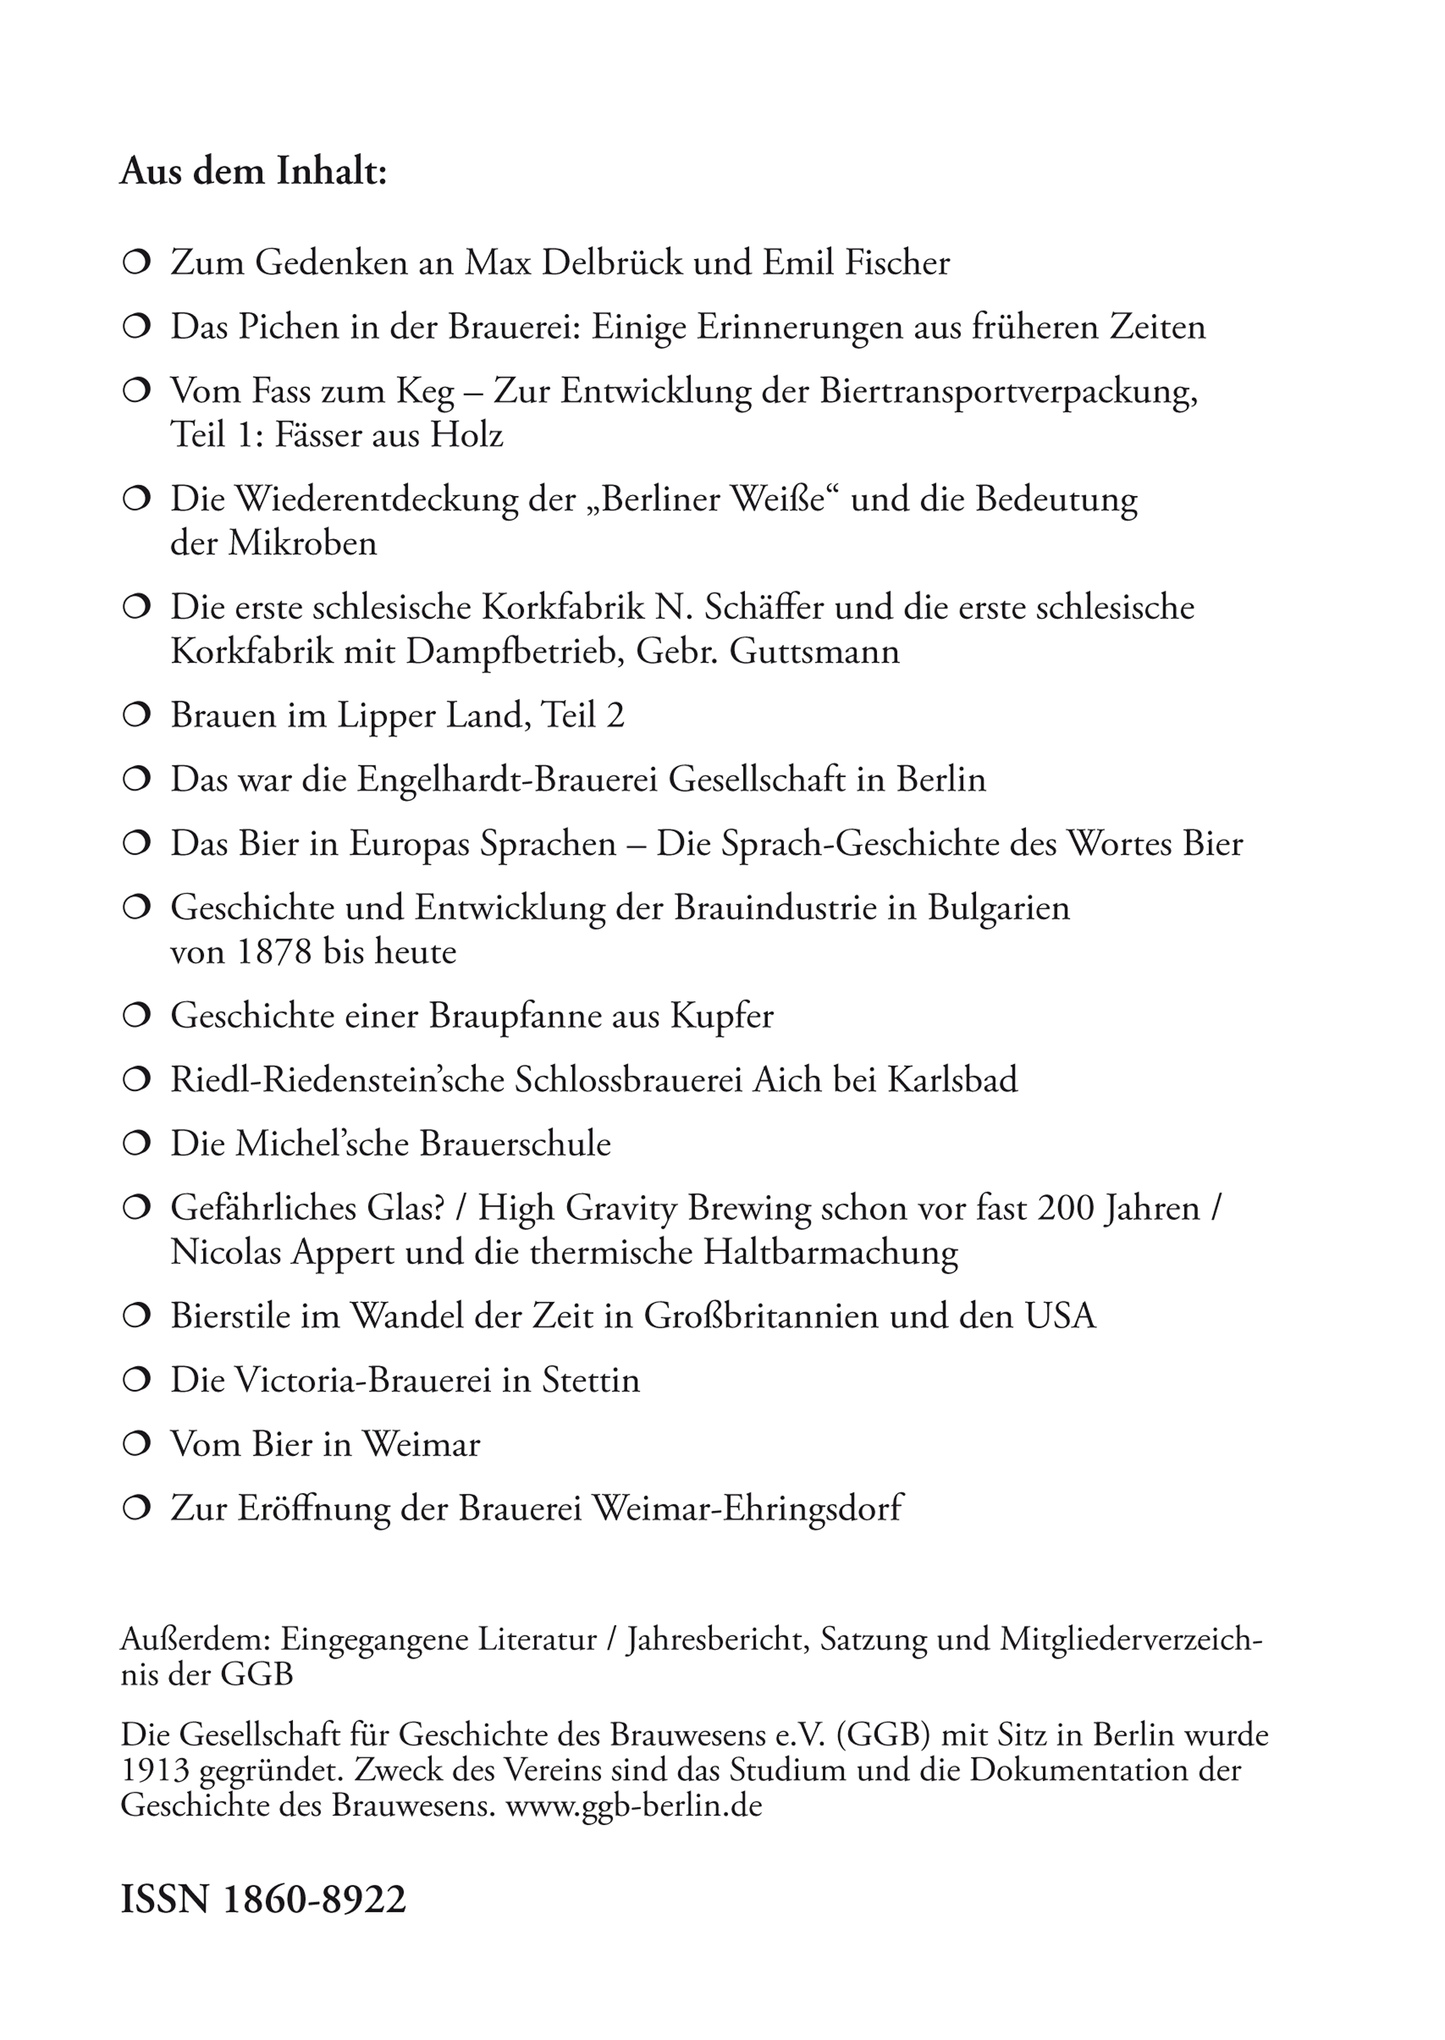 Jahrbuch 2019 der Gesellschaft für Geschichte des Brauwesens e.V. (GGB)